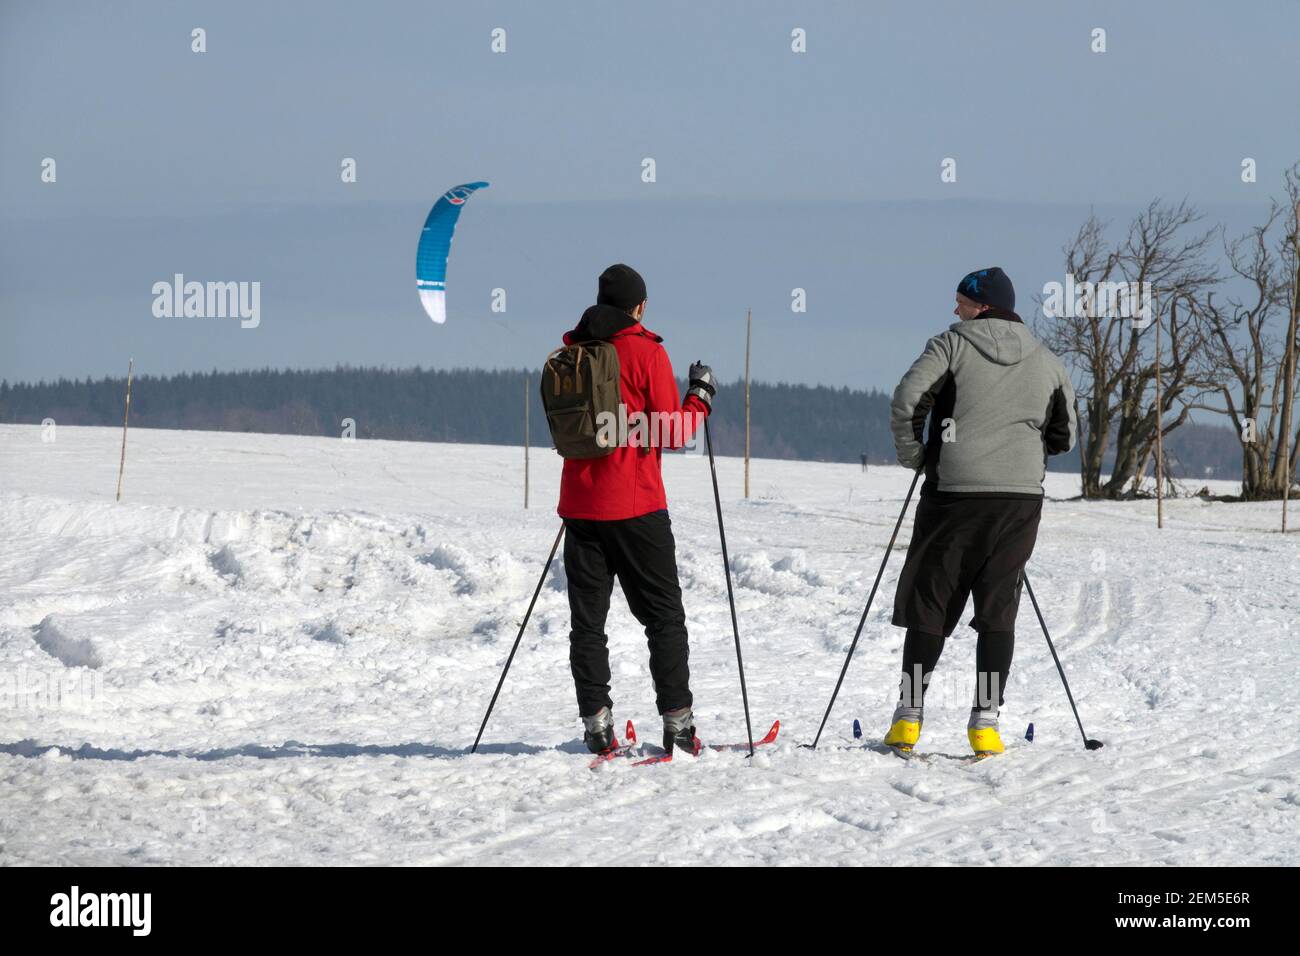 Wintersport Lifestyle, zwei Männer Skifahrer auf Langlaufloipe in verschneite Landschaft Stockfoto